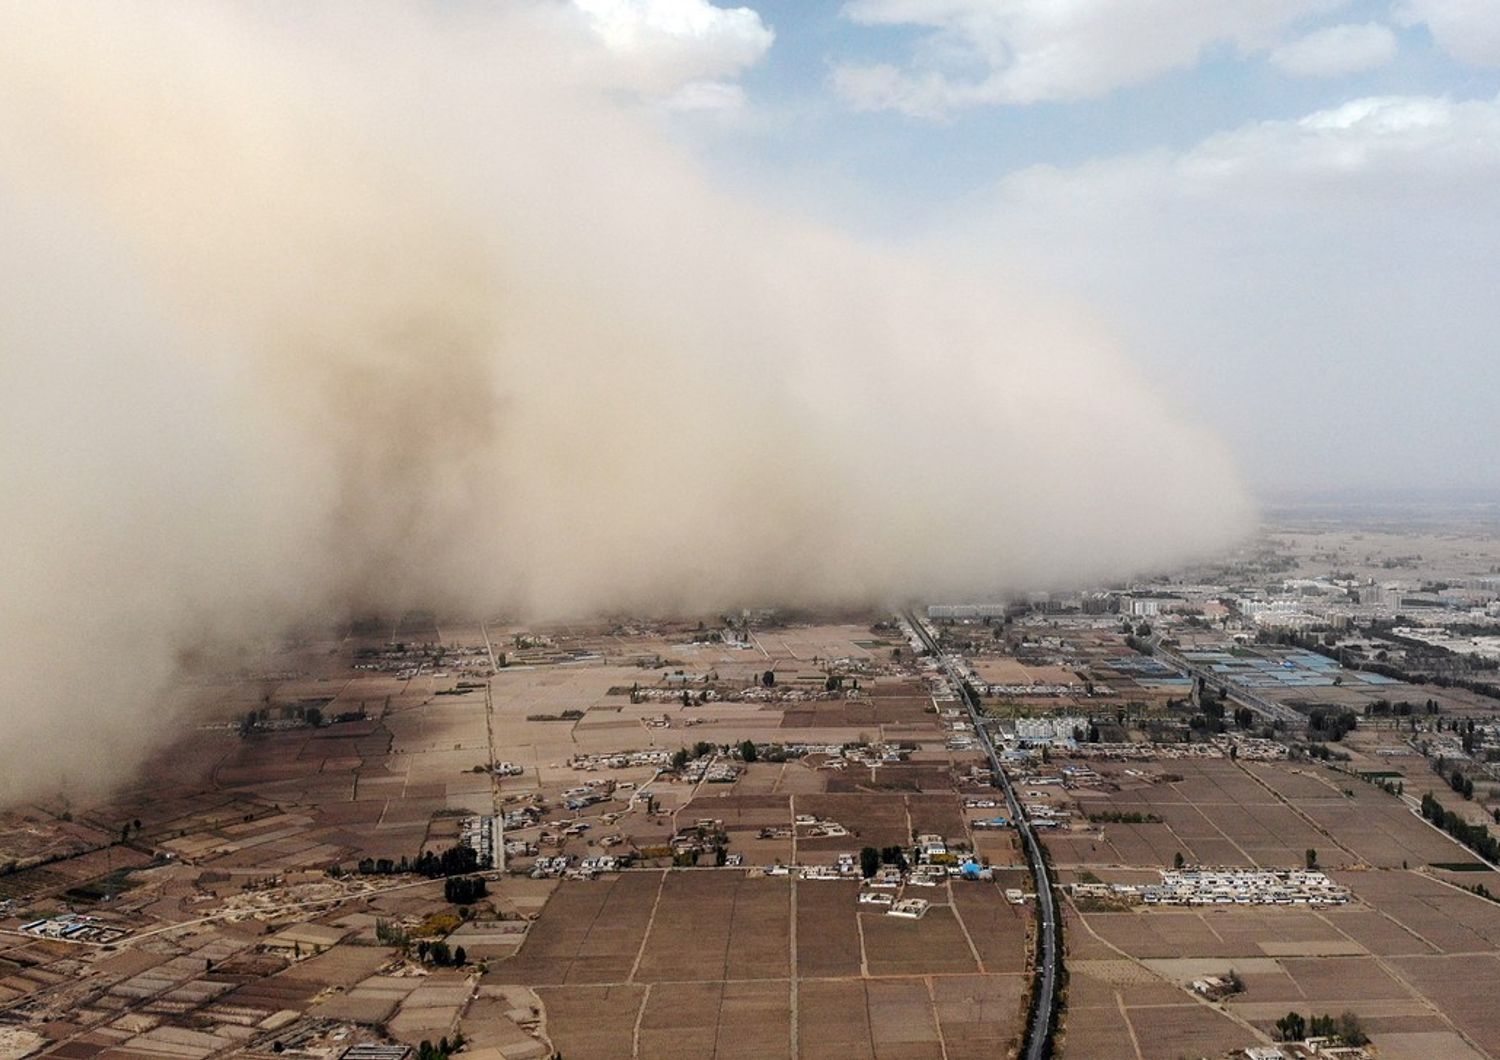 L'area di Zhangye colpita dalla tempesta di sabbia